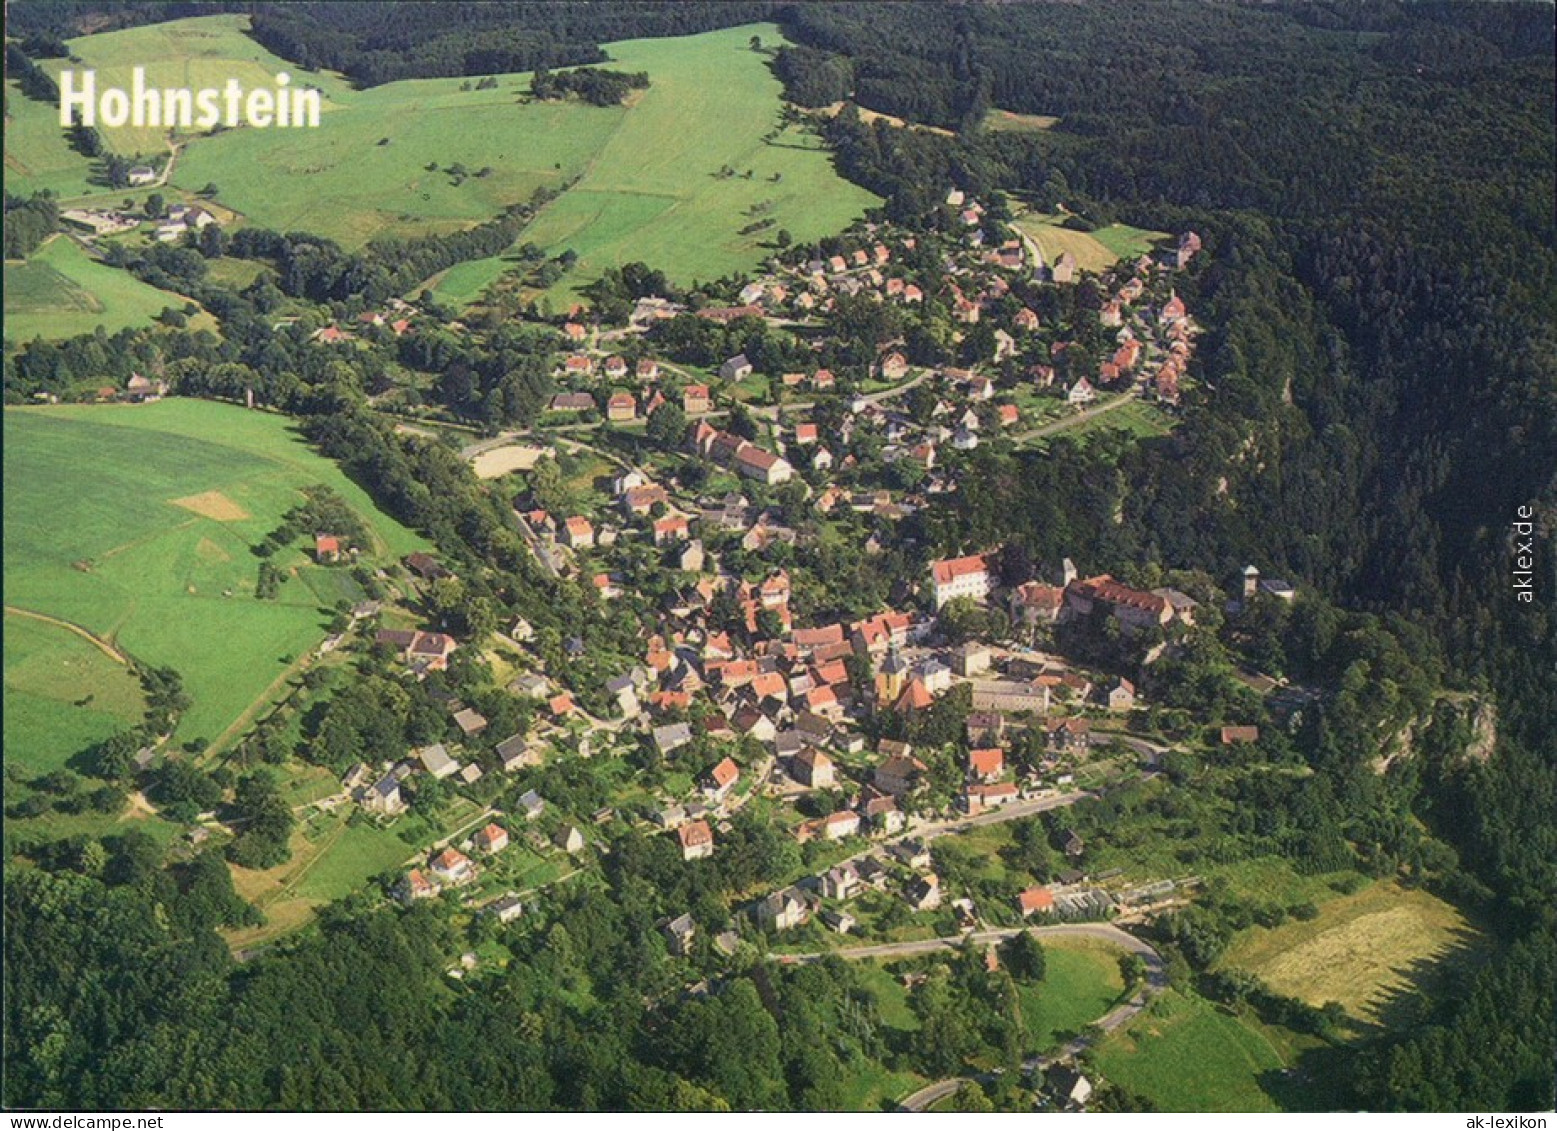 Ansichtskarte Hohnstein (Sächs. Schweiz) Luftbild 1994 - Hohnstein (Sächs. Schweiz)